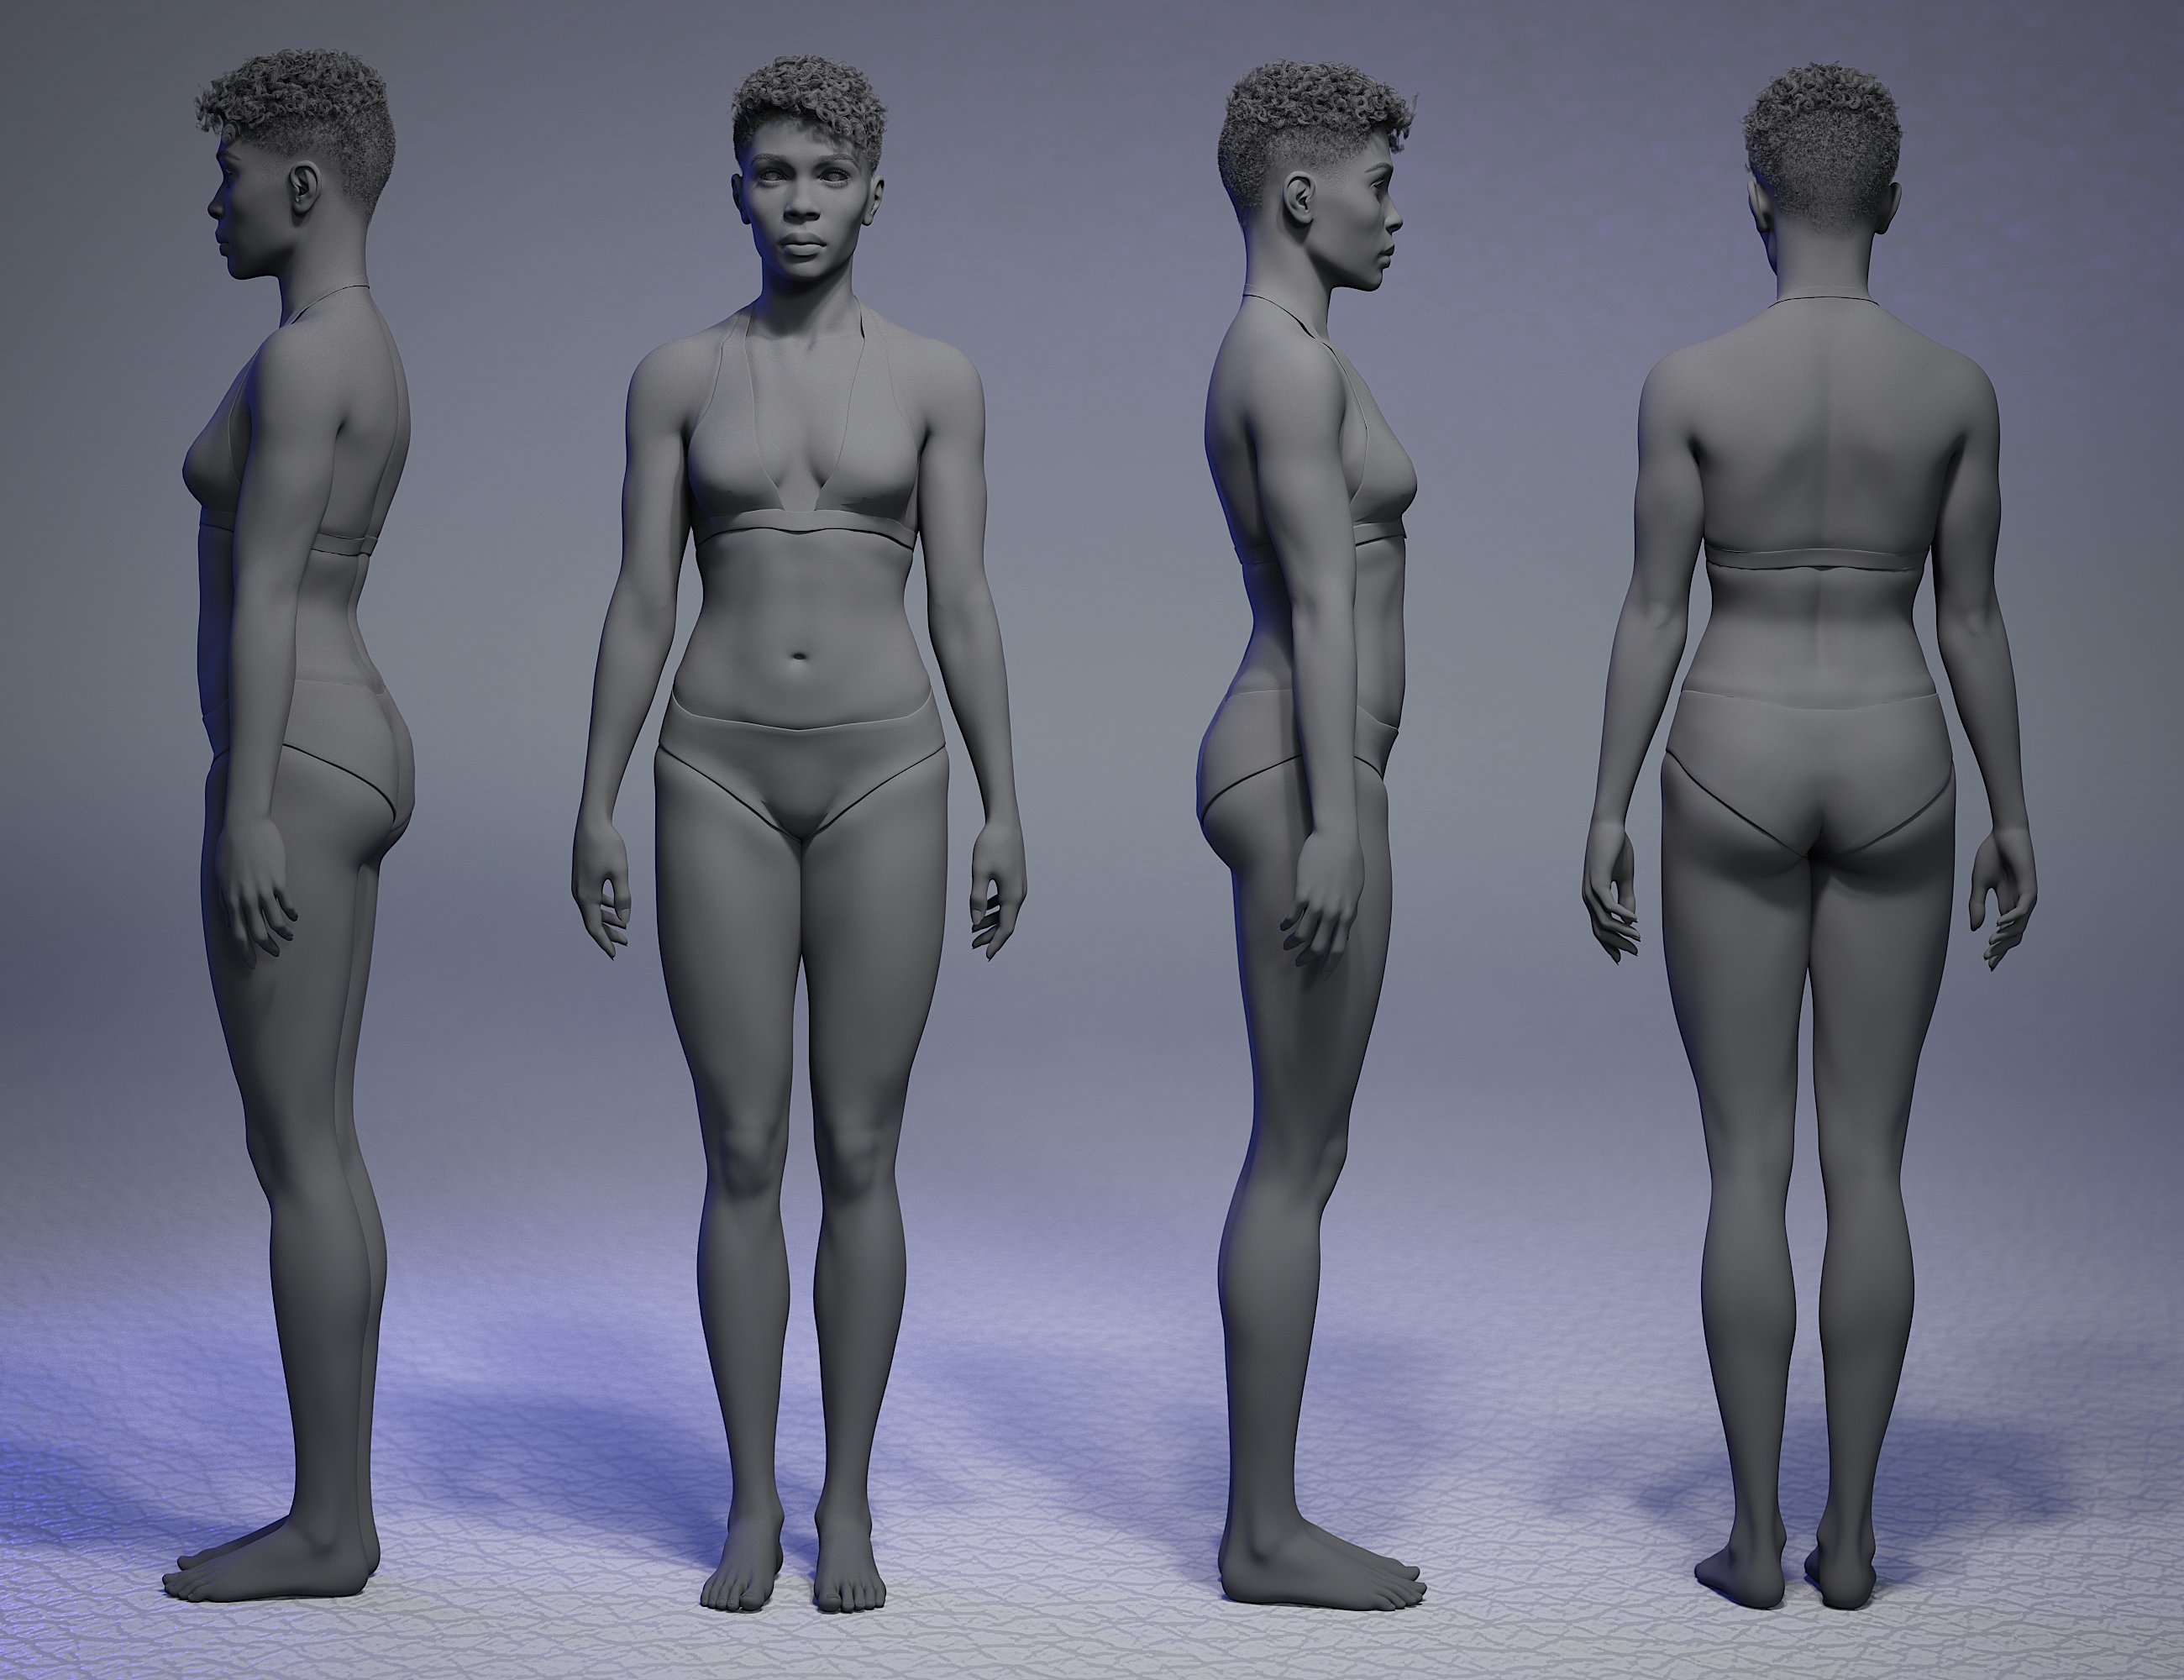 Jinx Jones 8.1 by: -Yannek-, 3D Models by Daz 3D